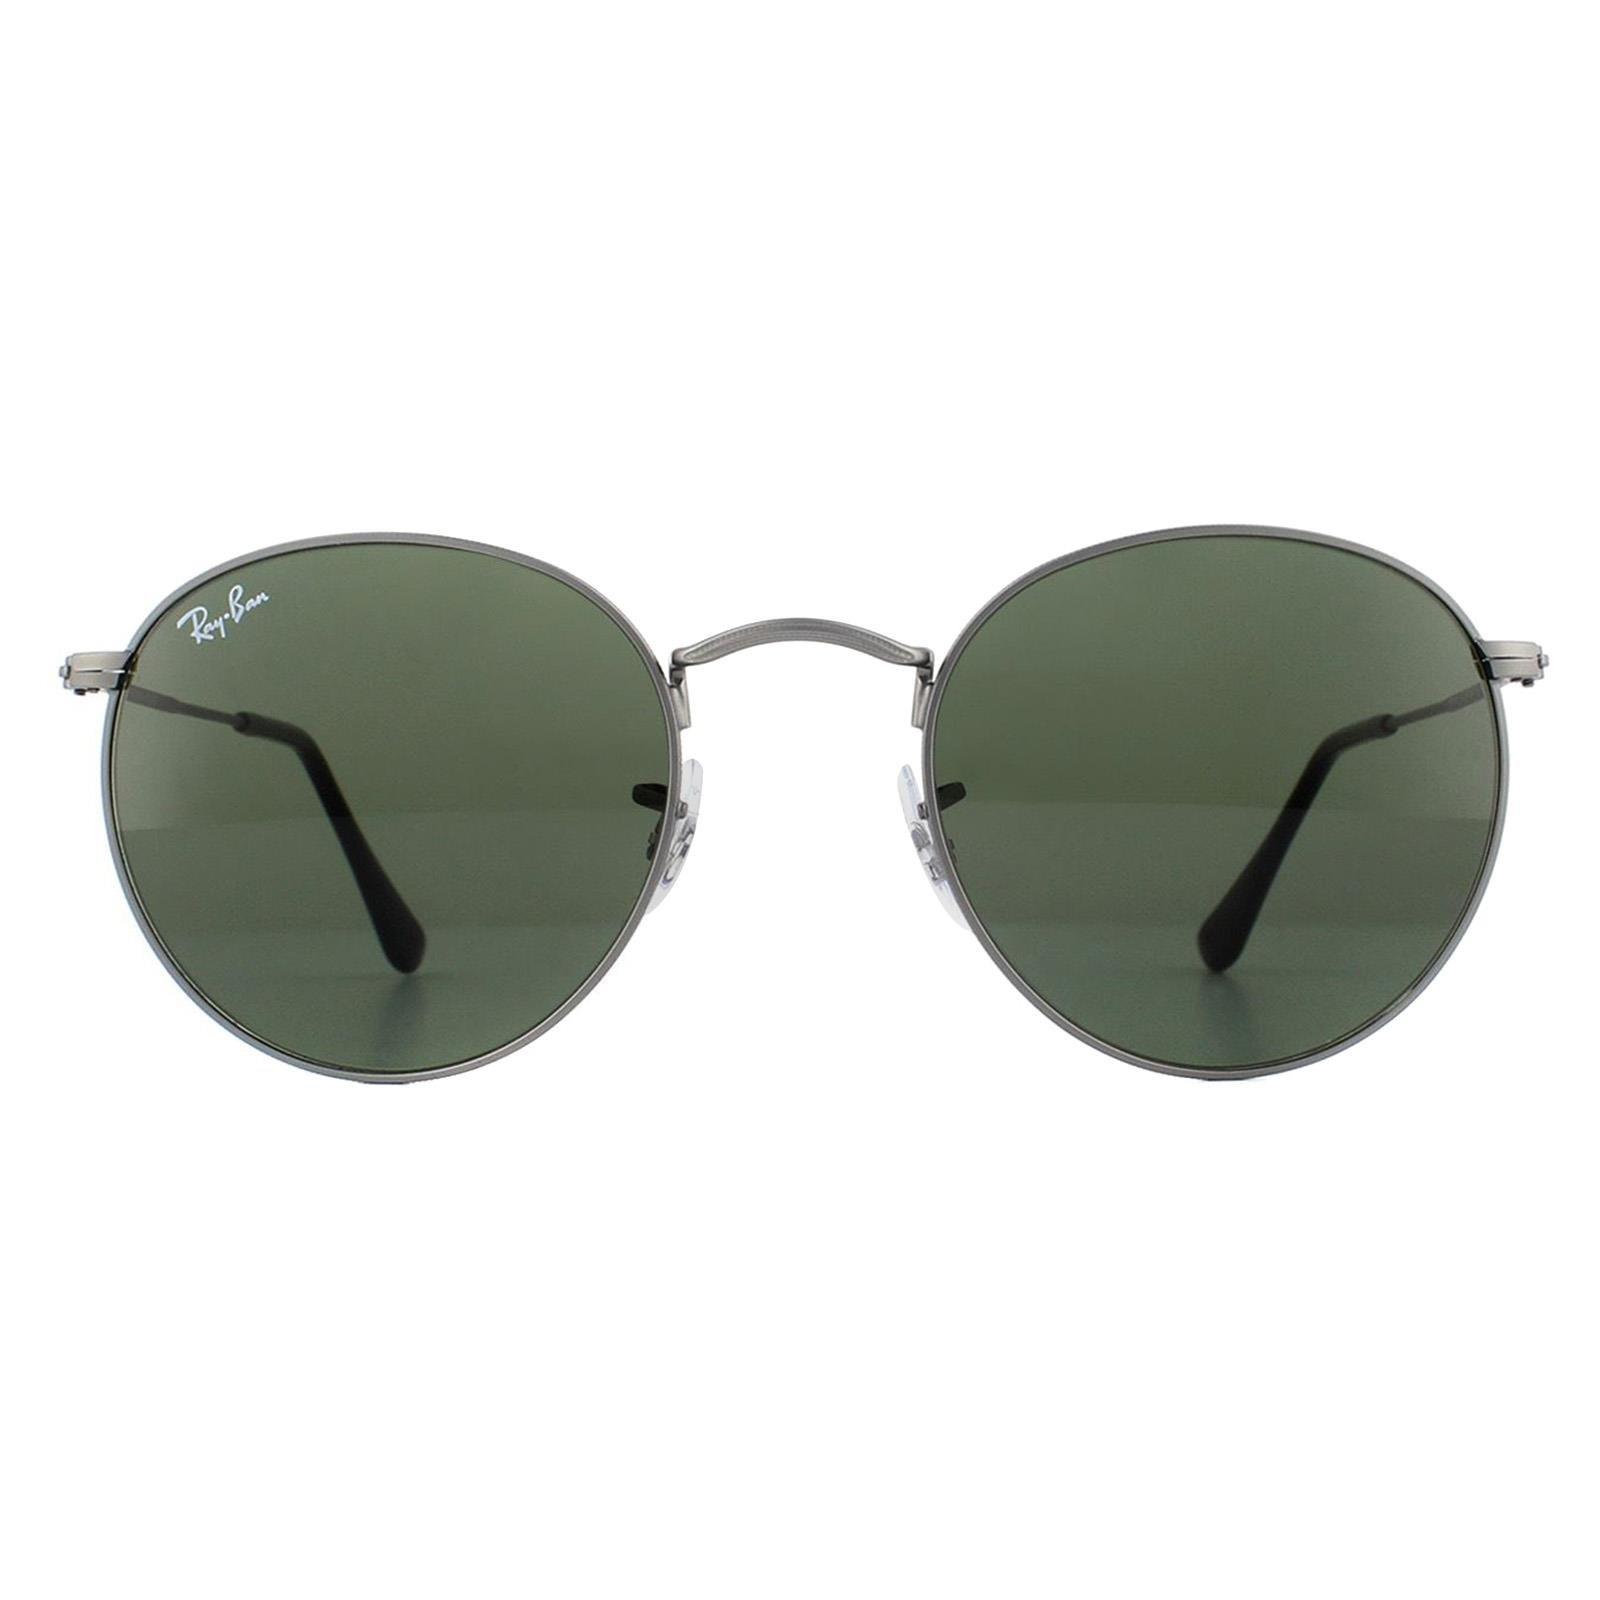 Round Matt Gunmetal Green Sunglasses